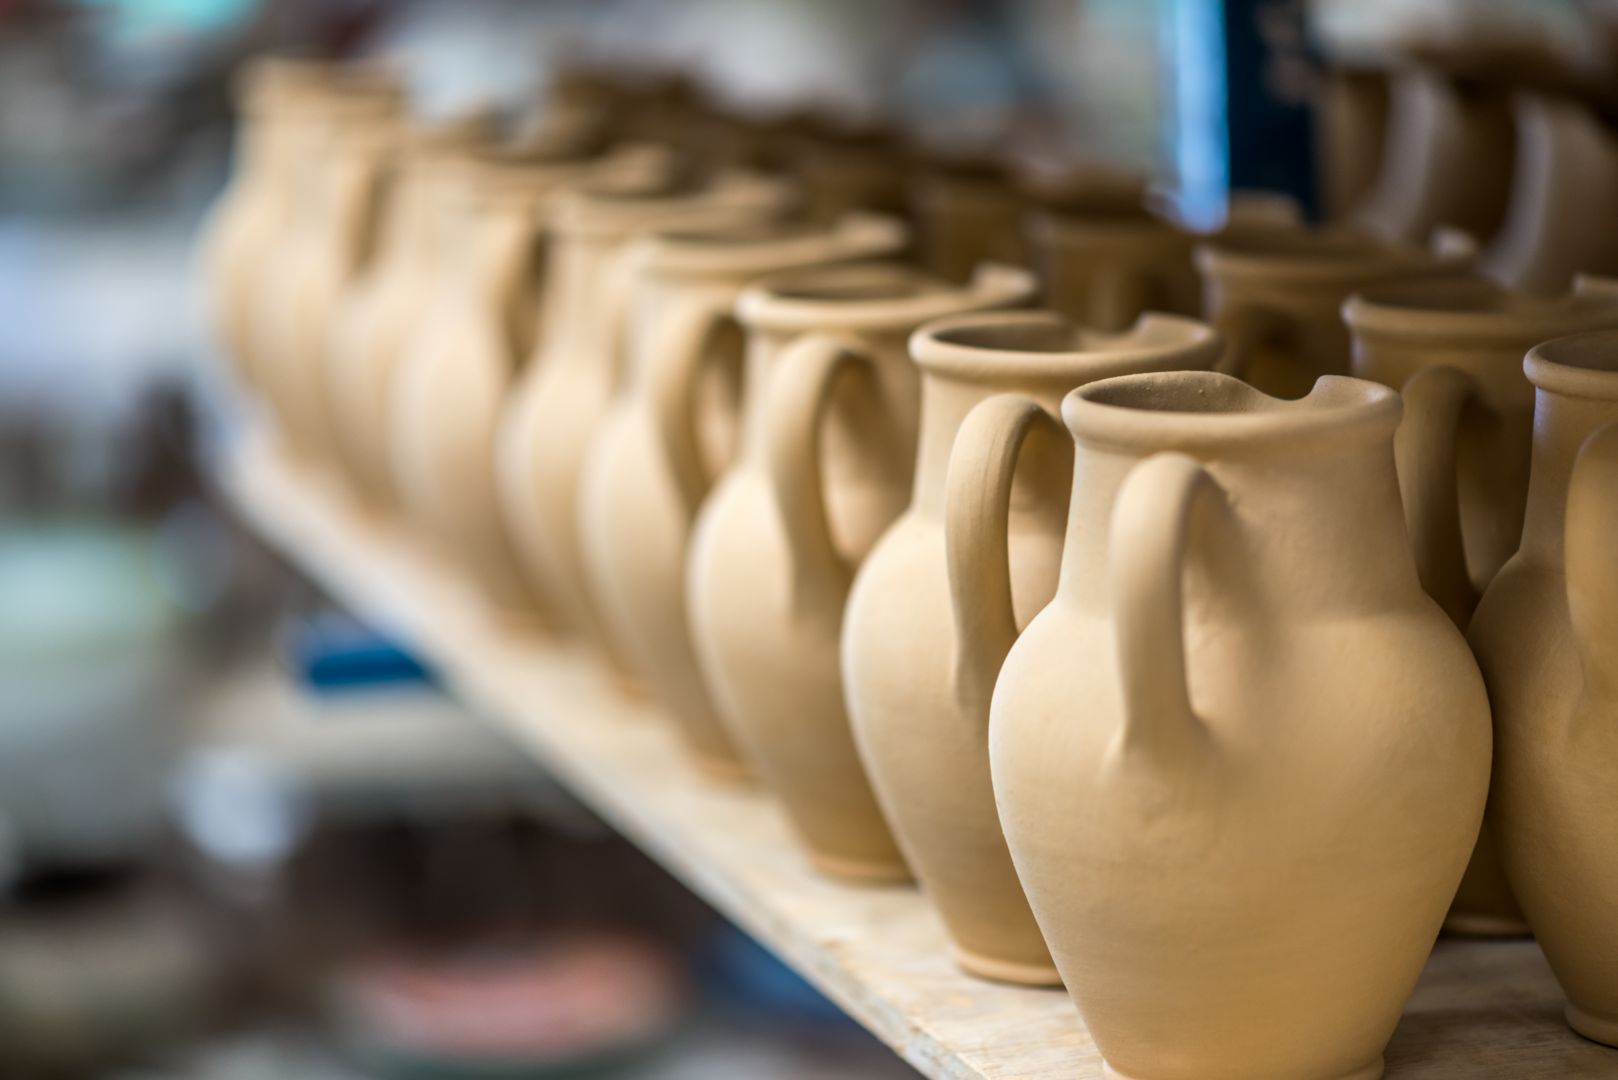 Poptávka na hrnky s vlastním potiskem (Keramika a porcelán) - Praha-západ